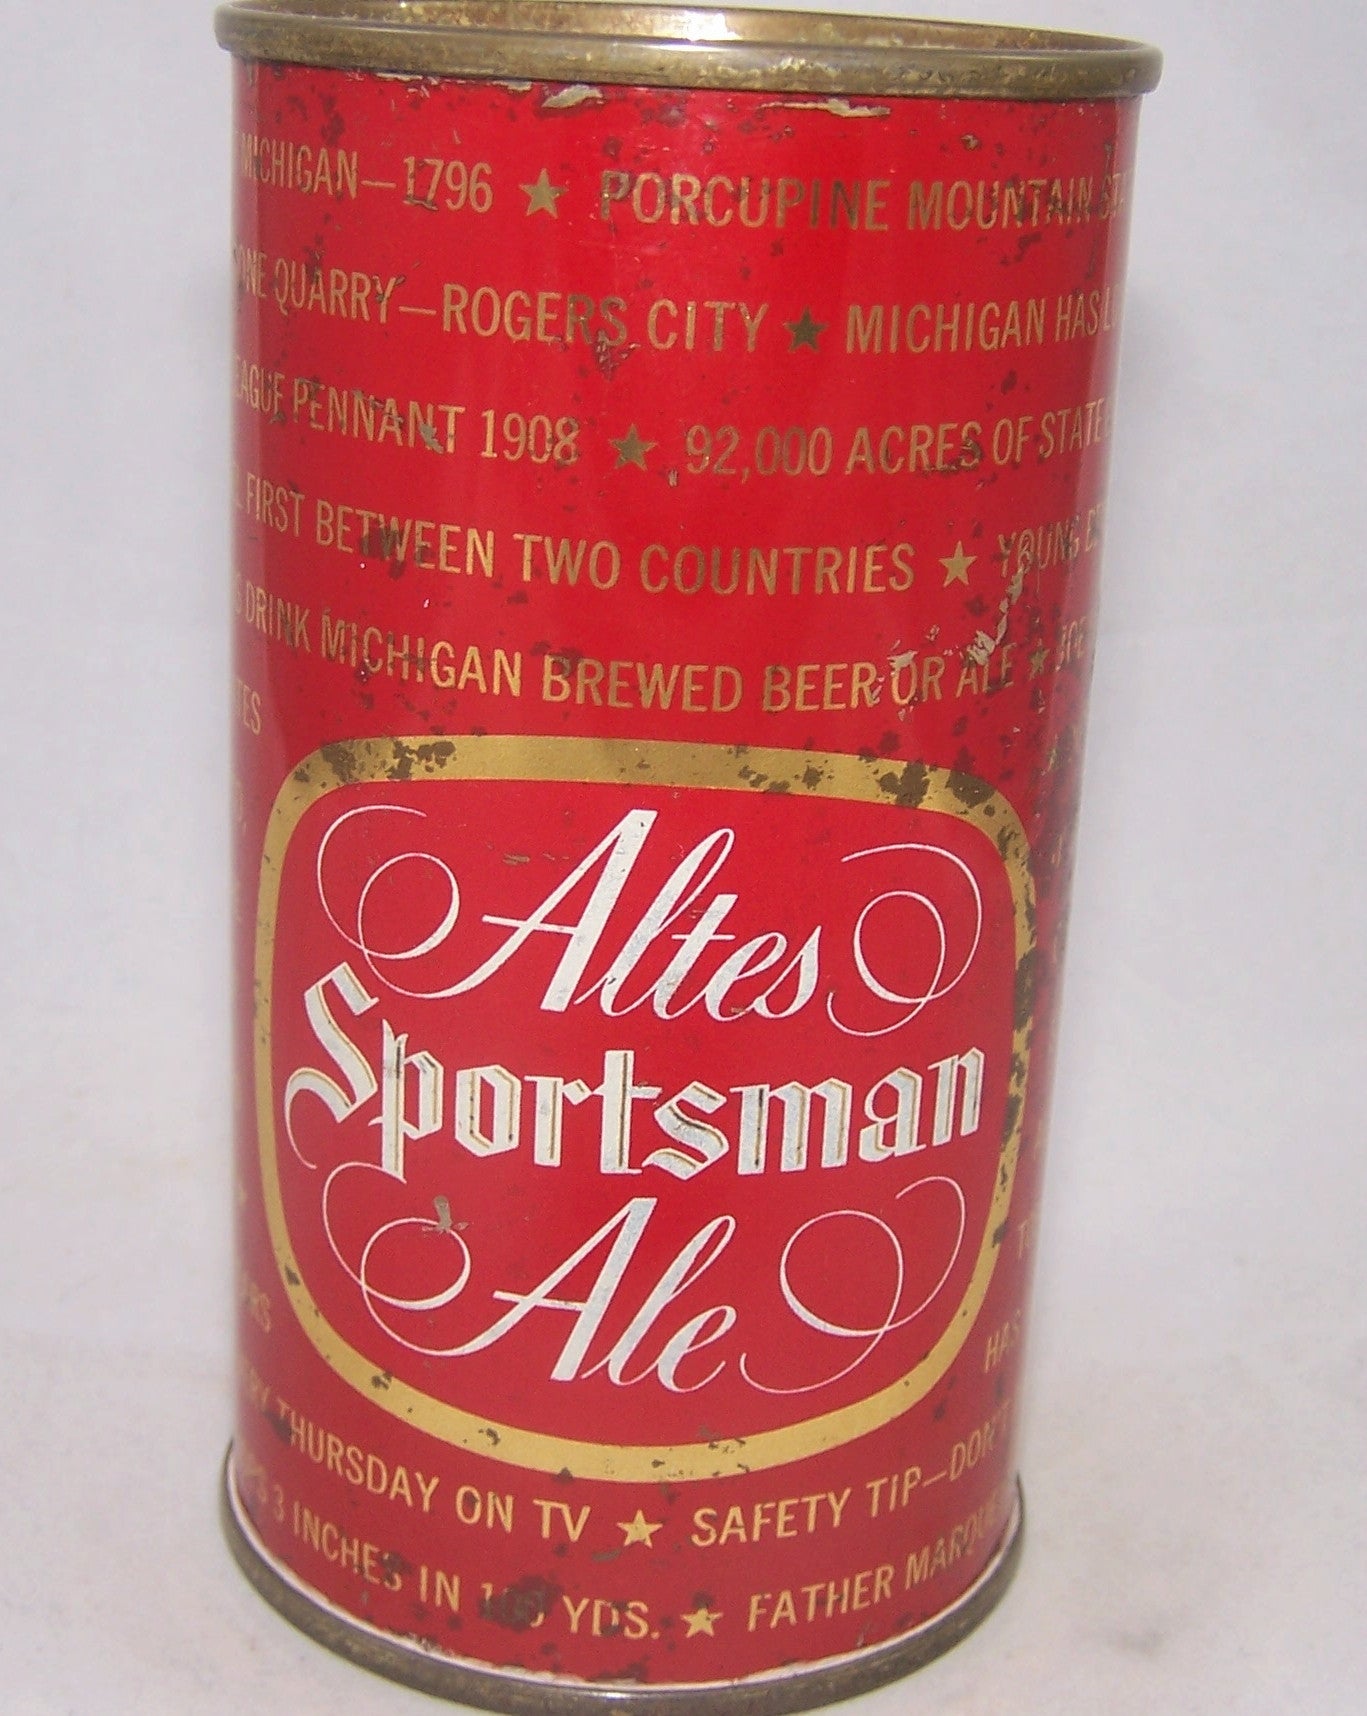 Altes Sportsman Ale, USBC N.L Grade 1- Sold on 03/26/17